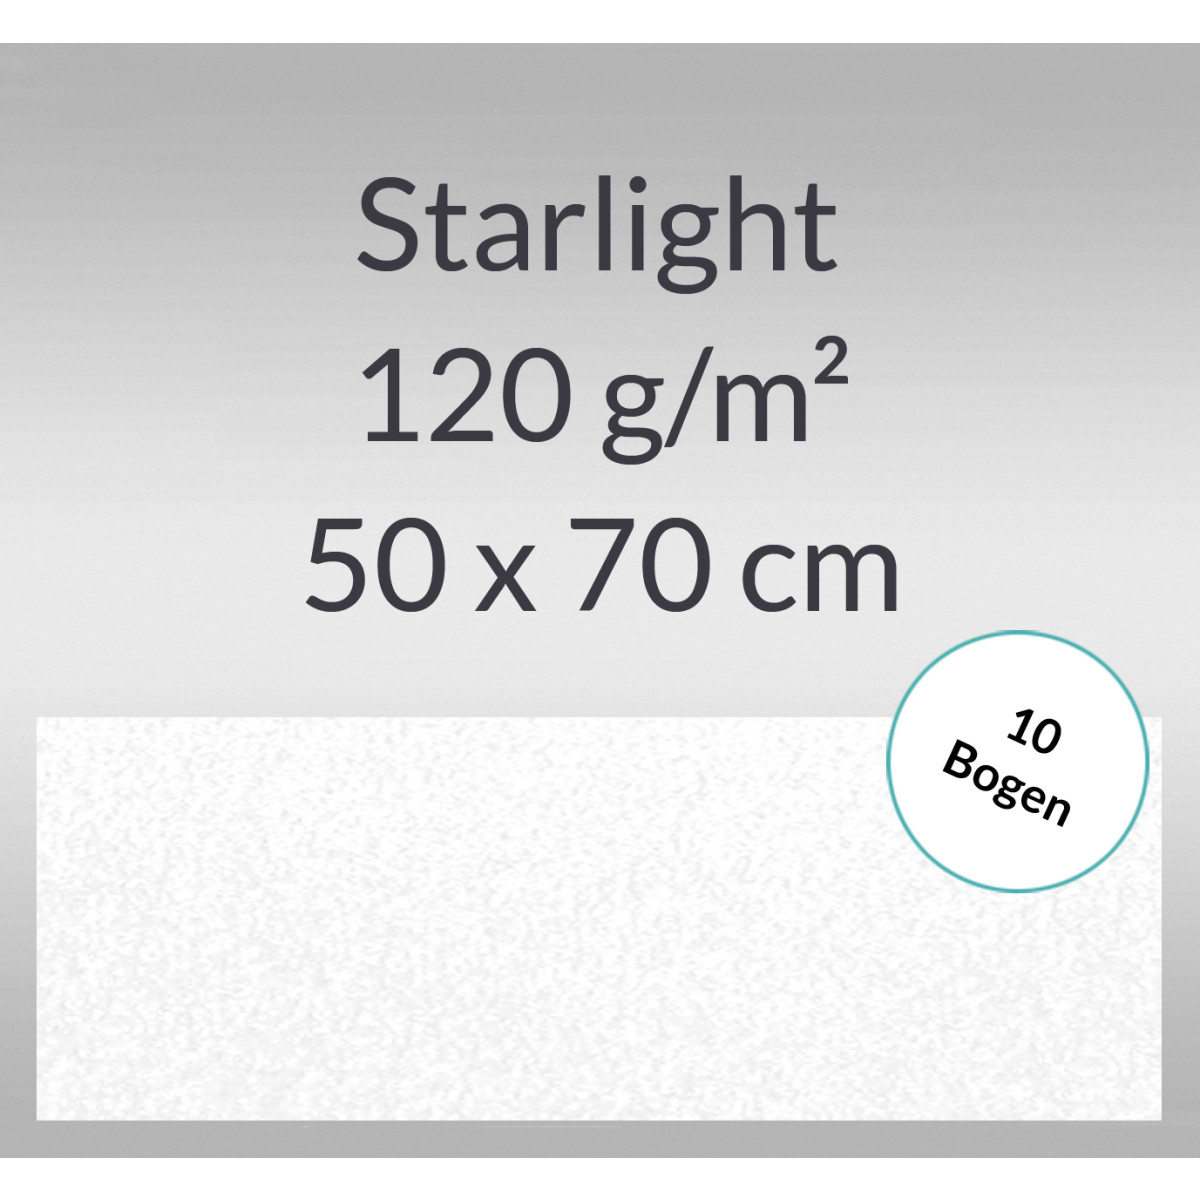 Starlight 120 g/qm 50 x 70 cm hochweiß - 10 Bogen